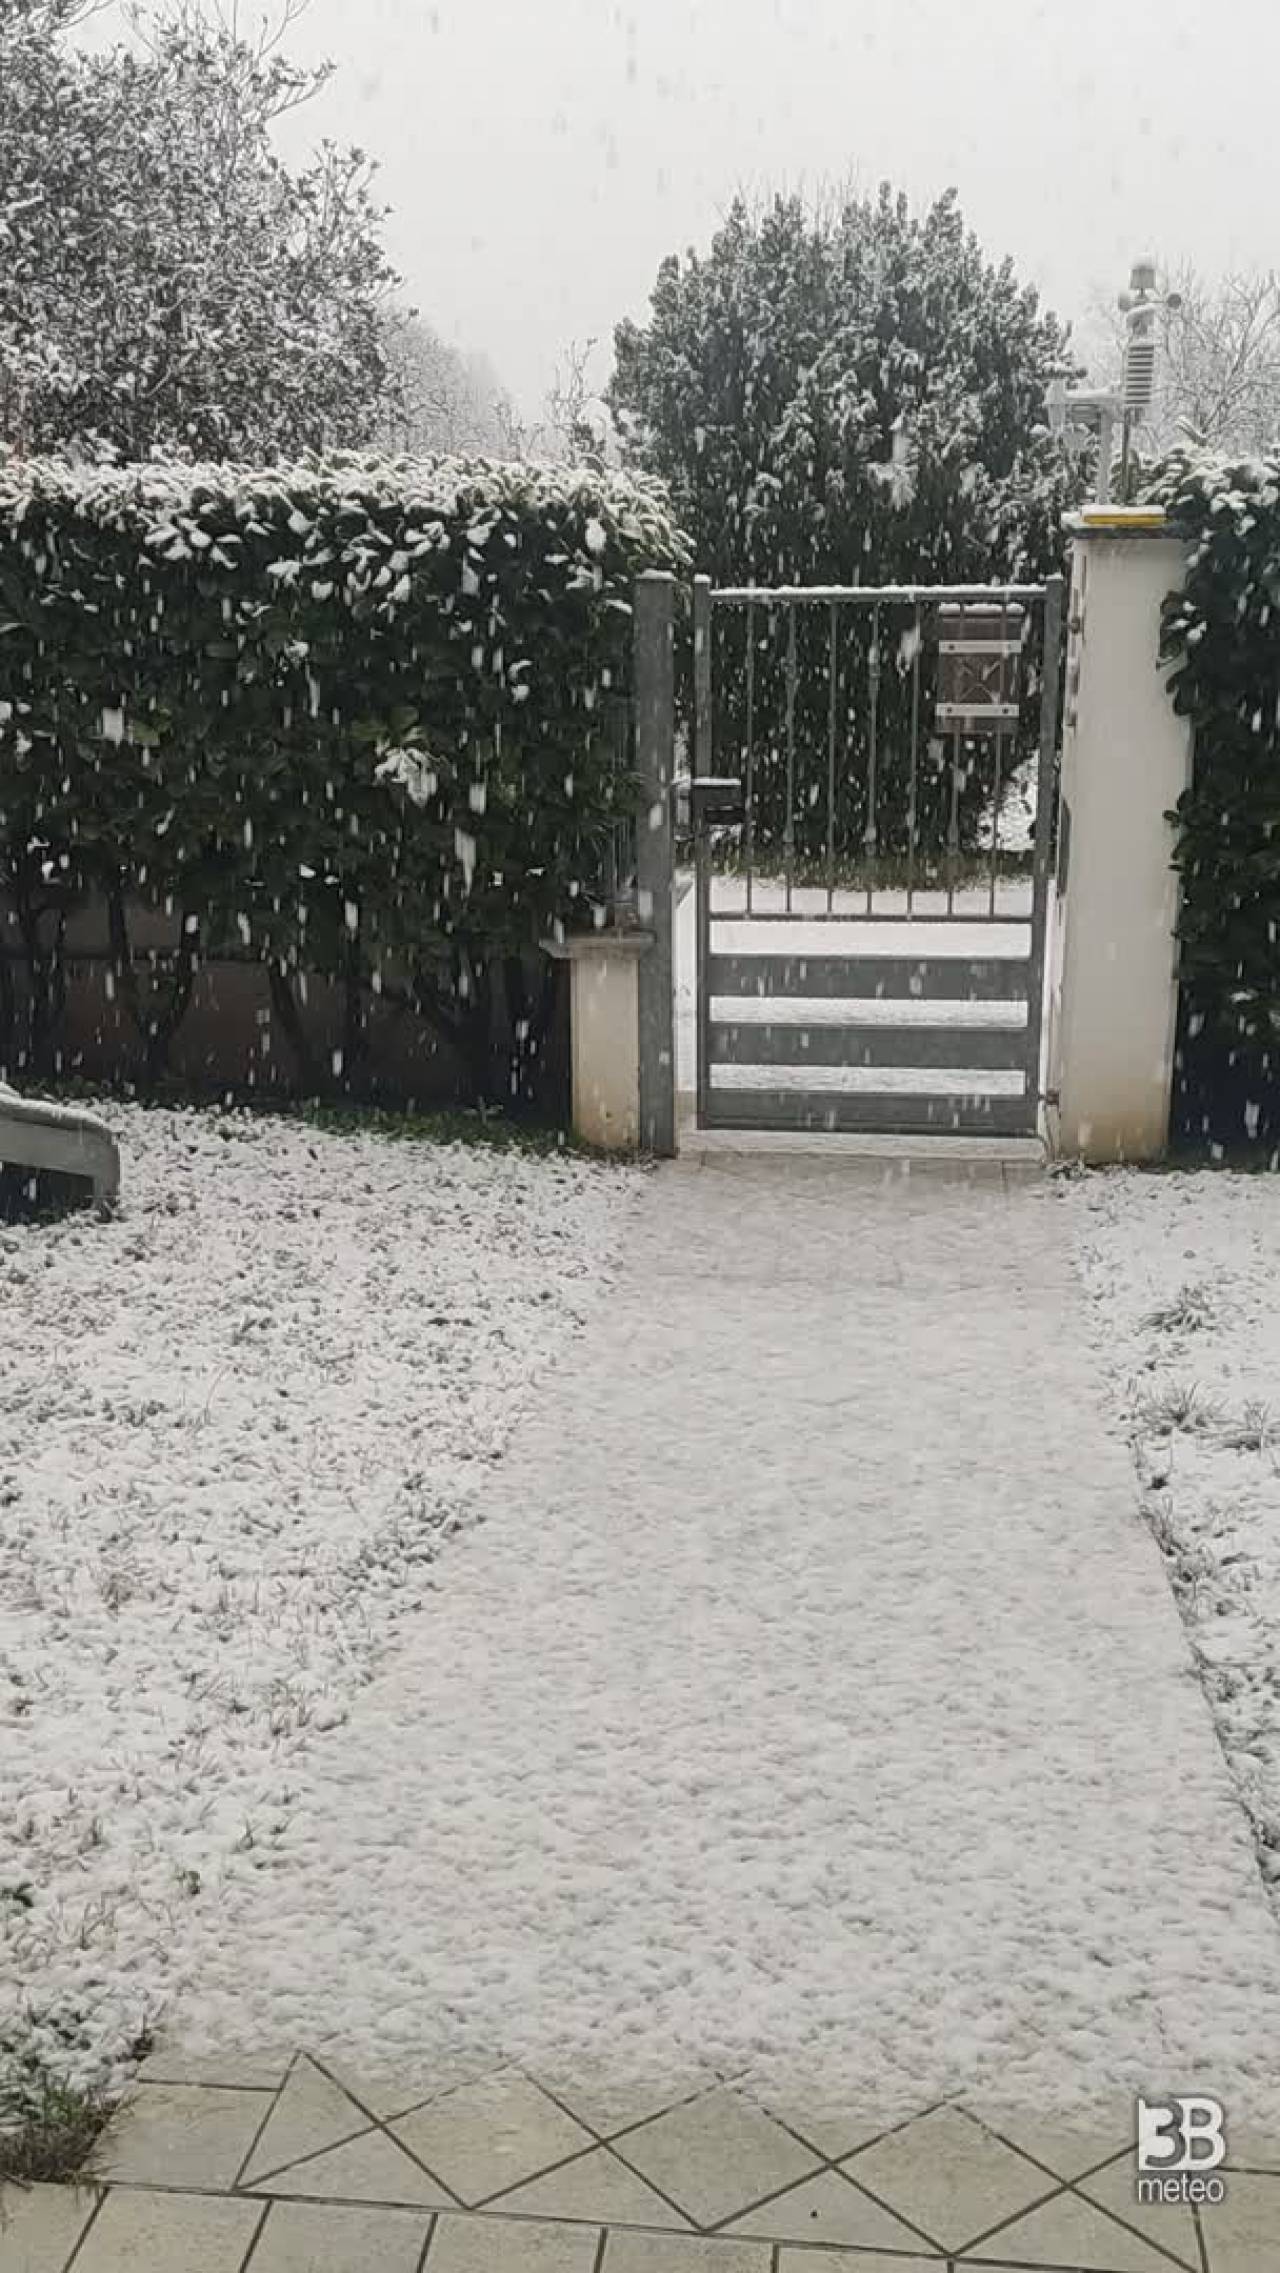 Cronaca meteo diretta - Neve nella zona di Bergamo, imbiancata Bolgare - Video